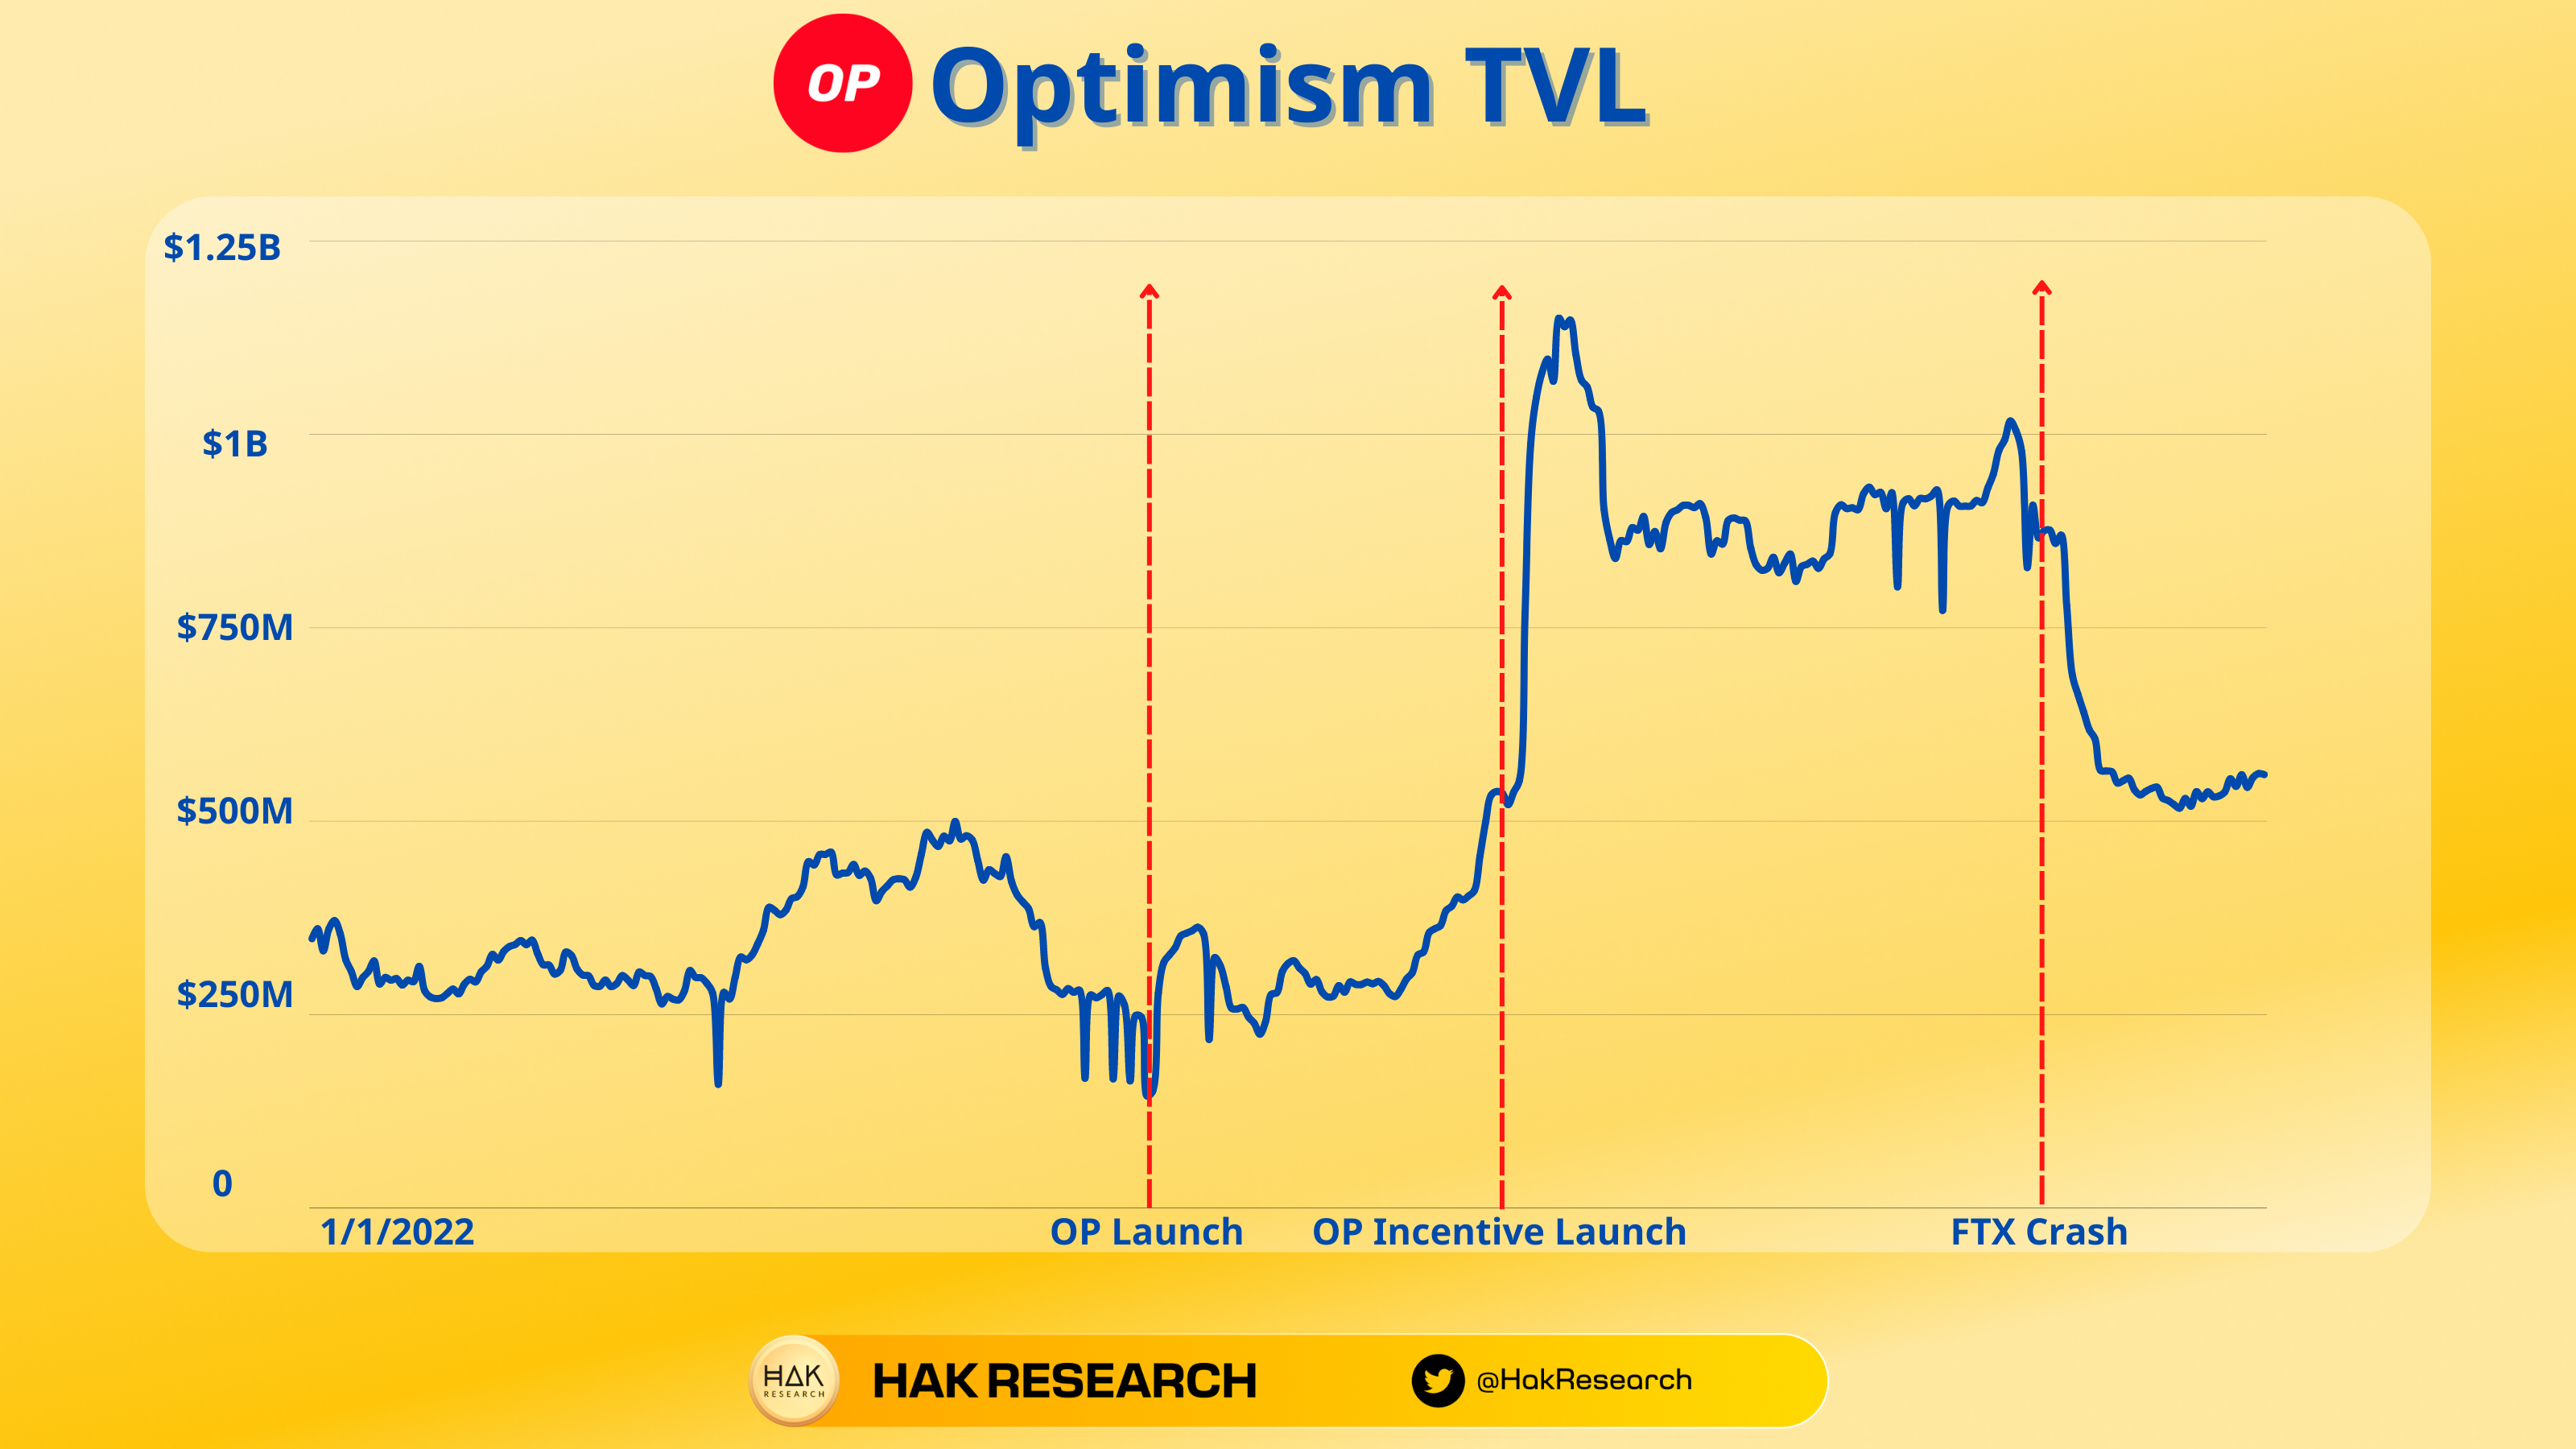 TVL Optimism